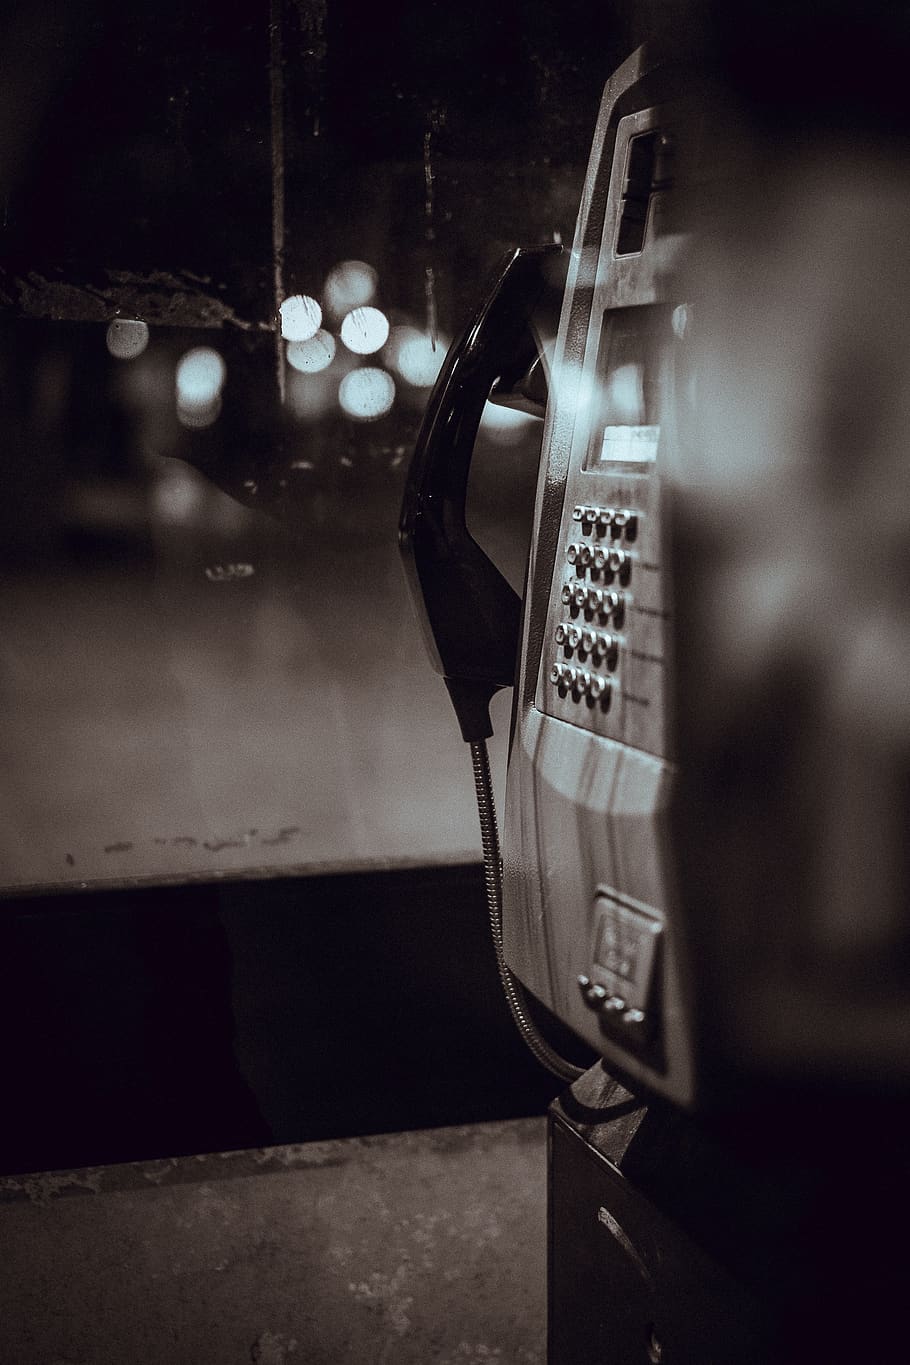 telefone público, comunicação, chamada, telefone, preto e branco, bokeh, close-up, tecnologia, nenhuma pessoa, estilo retrô